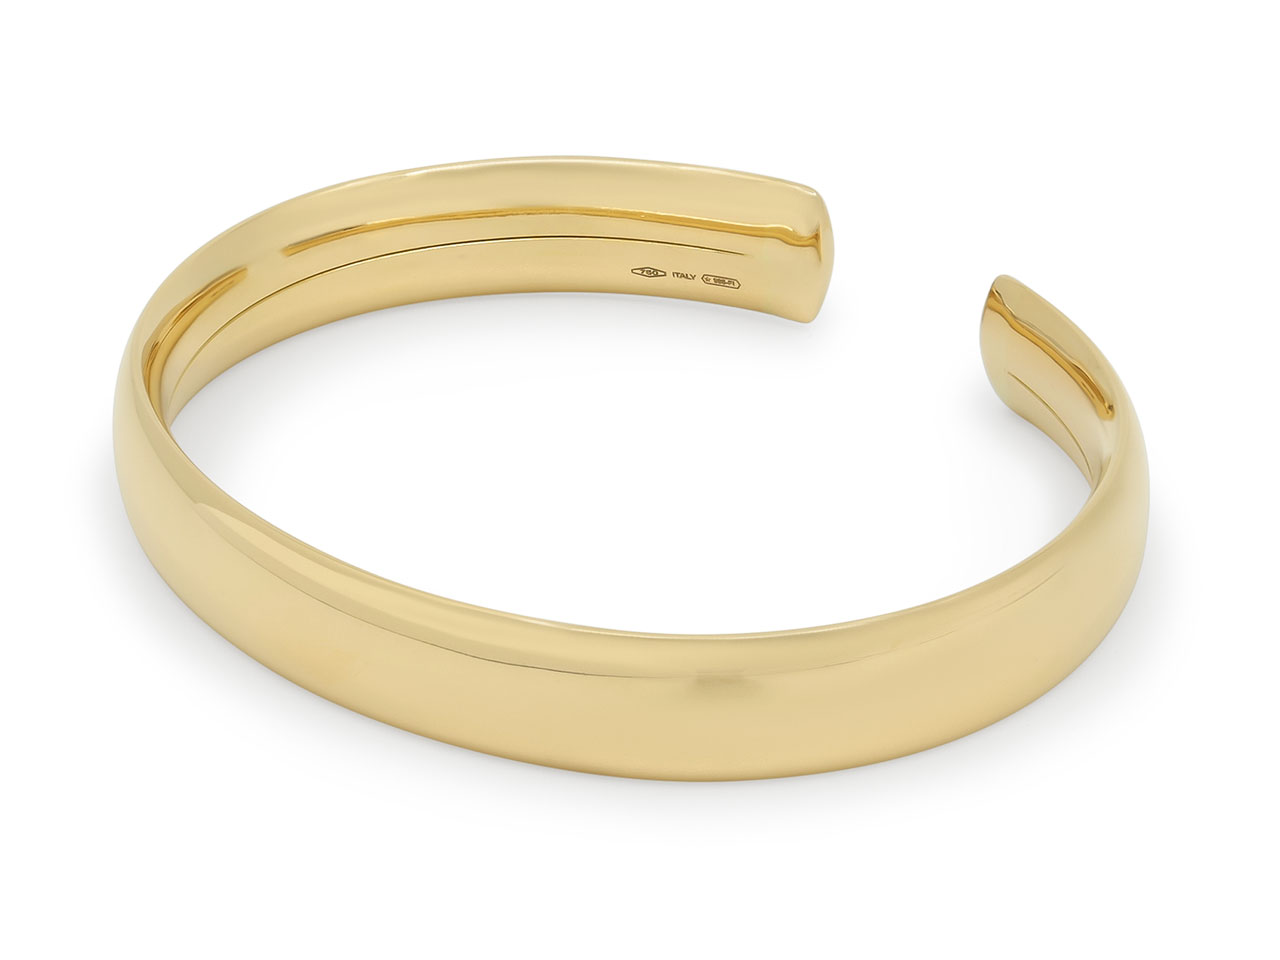 Italian Flexible Cuff Bracelet in 18K Gold, by Beladora